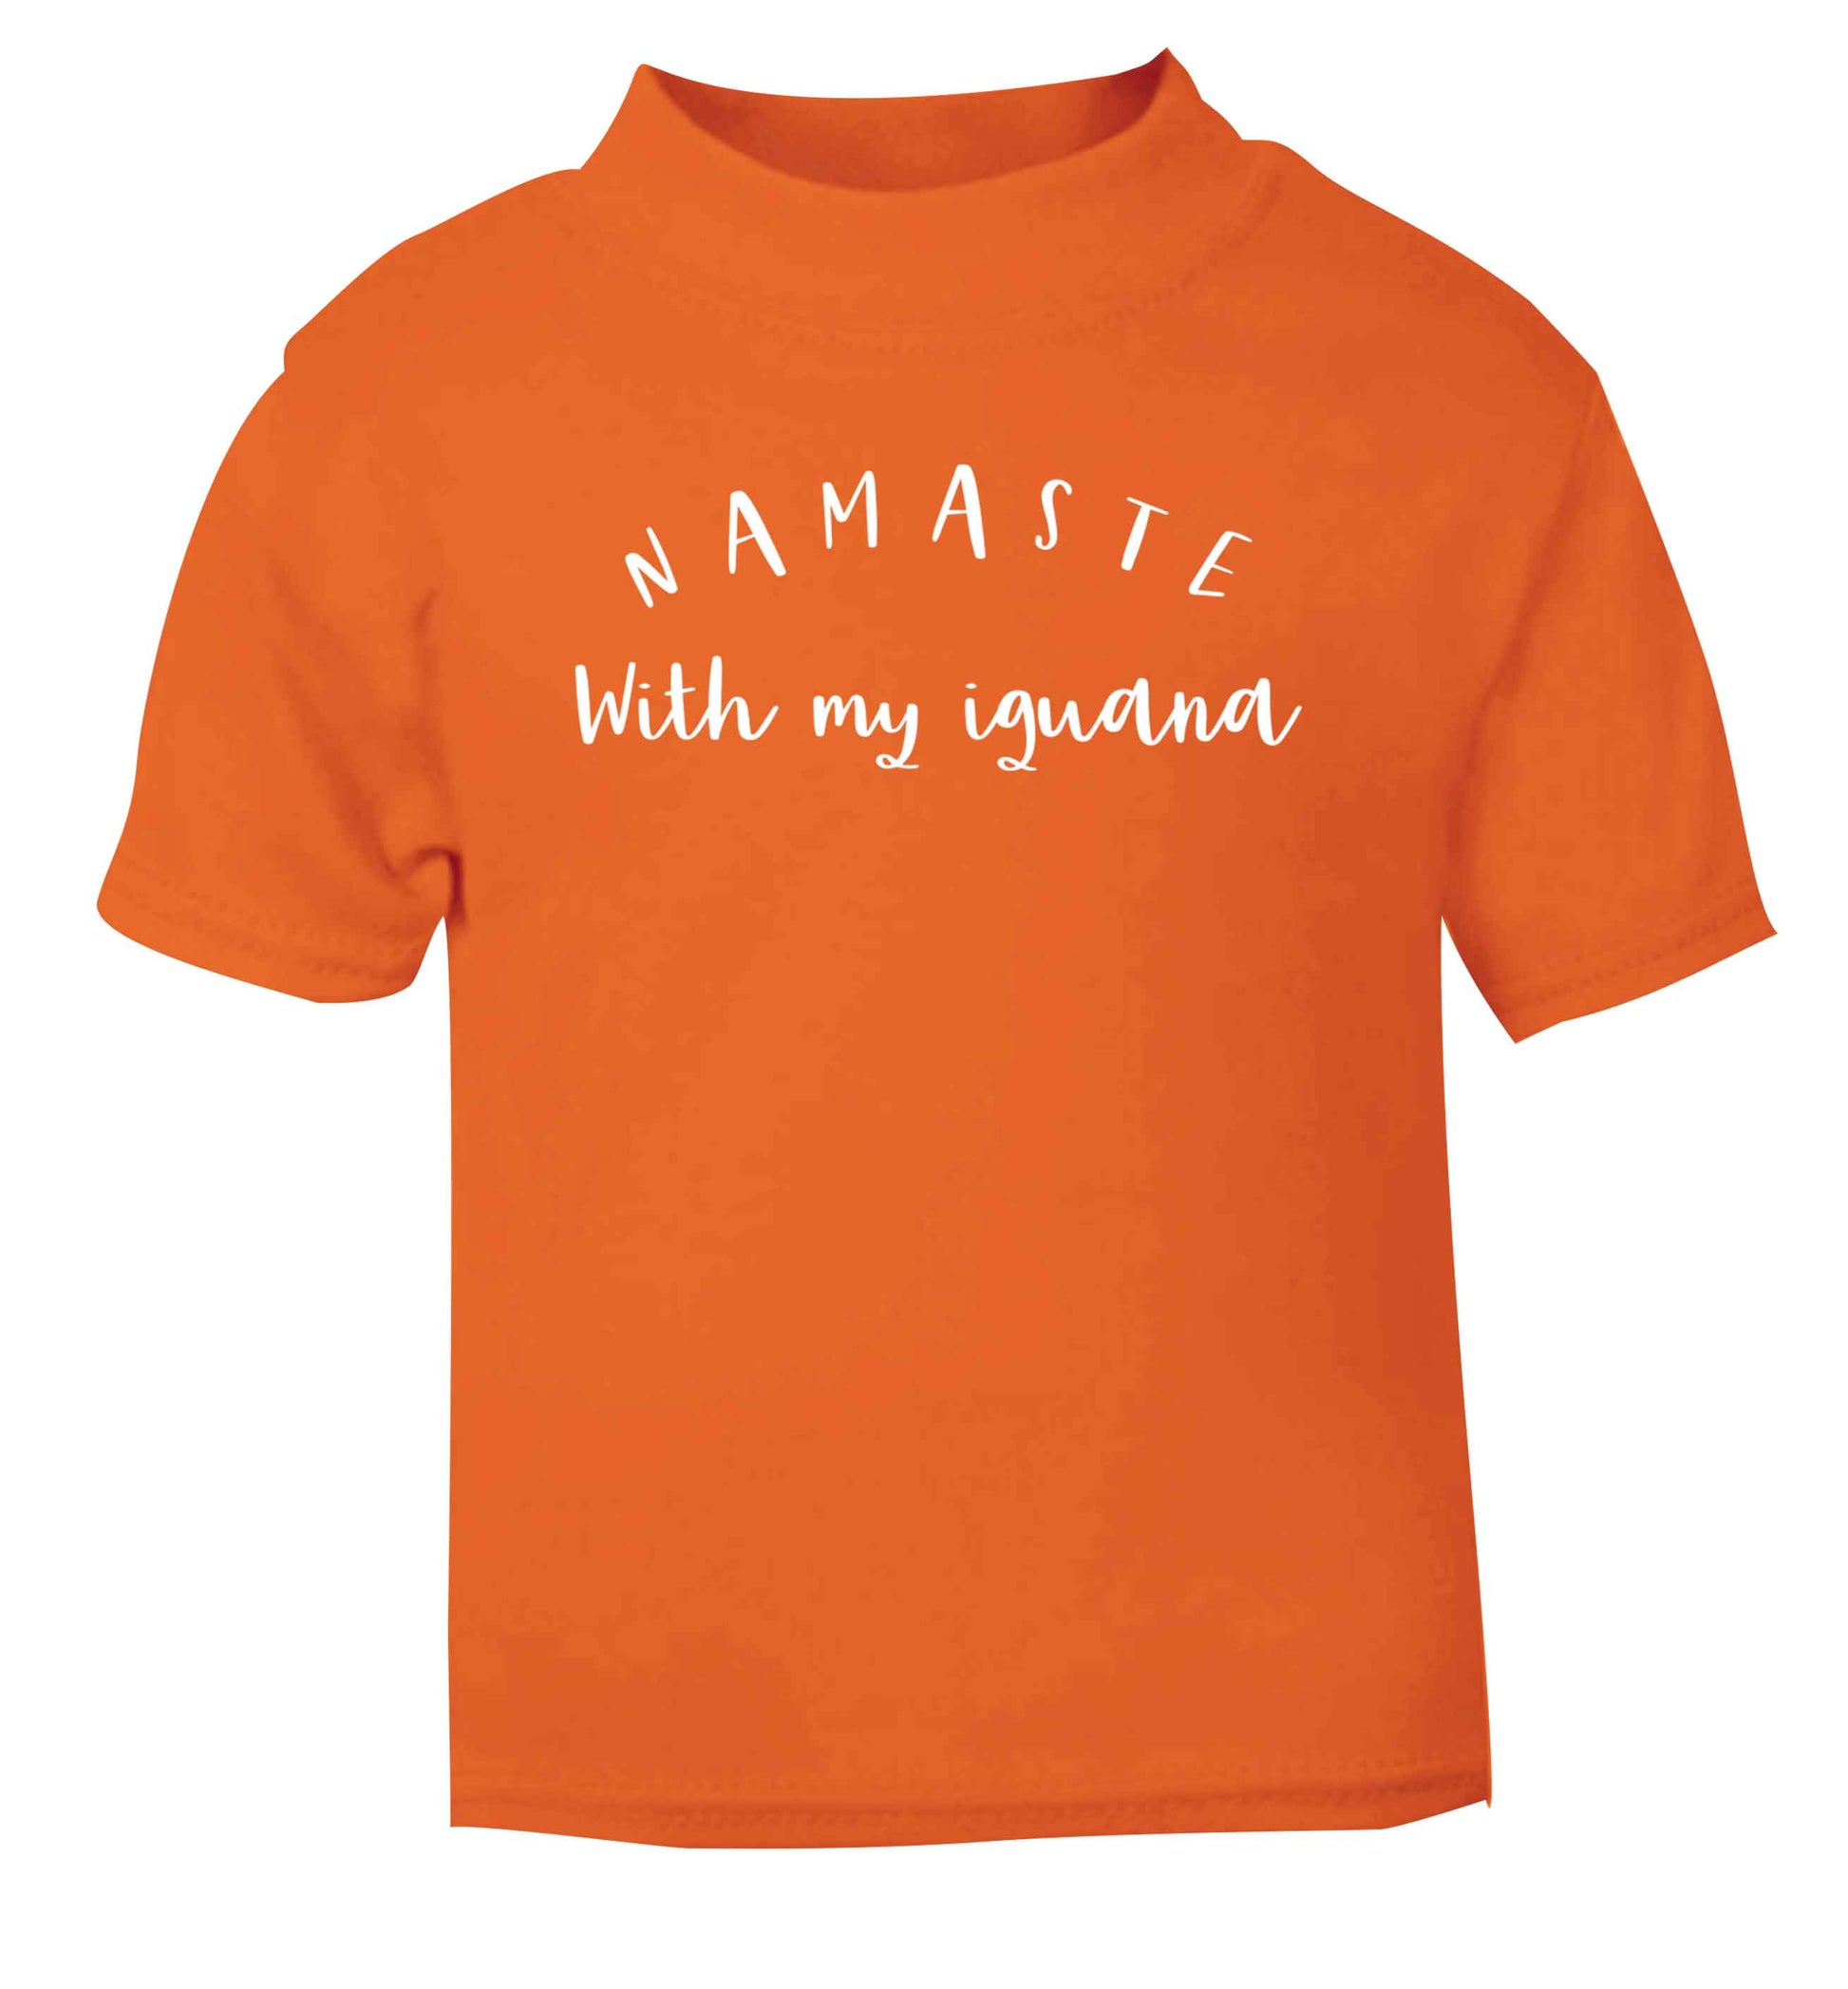 Namaste with my iguana orange Baby Toddler Tshirt 2 Years